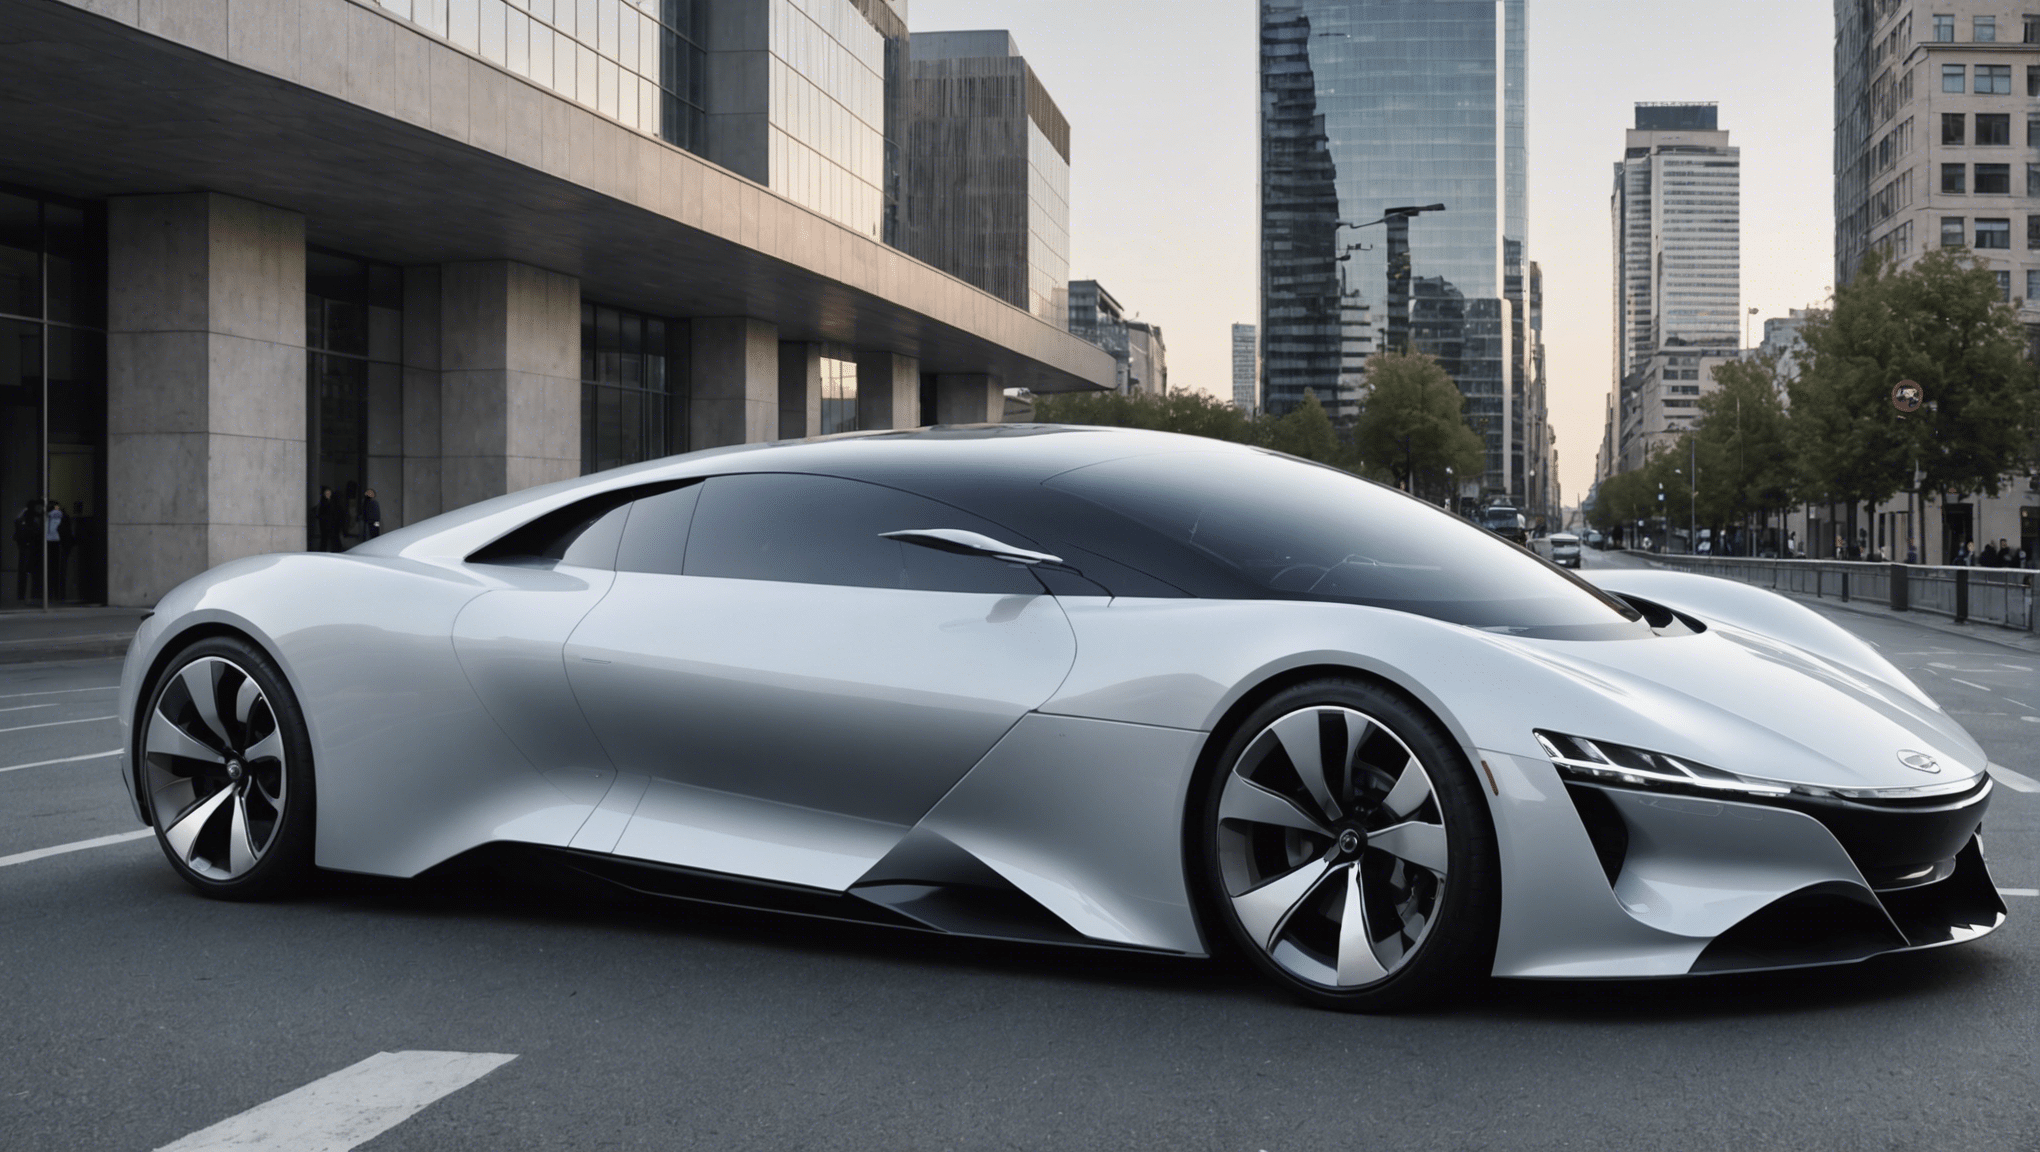 découvrez les caractéristiques du design futuriste des voitures et plongez dans l'innovation automobile à venir avec notre analyse complète.